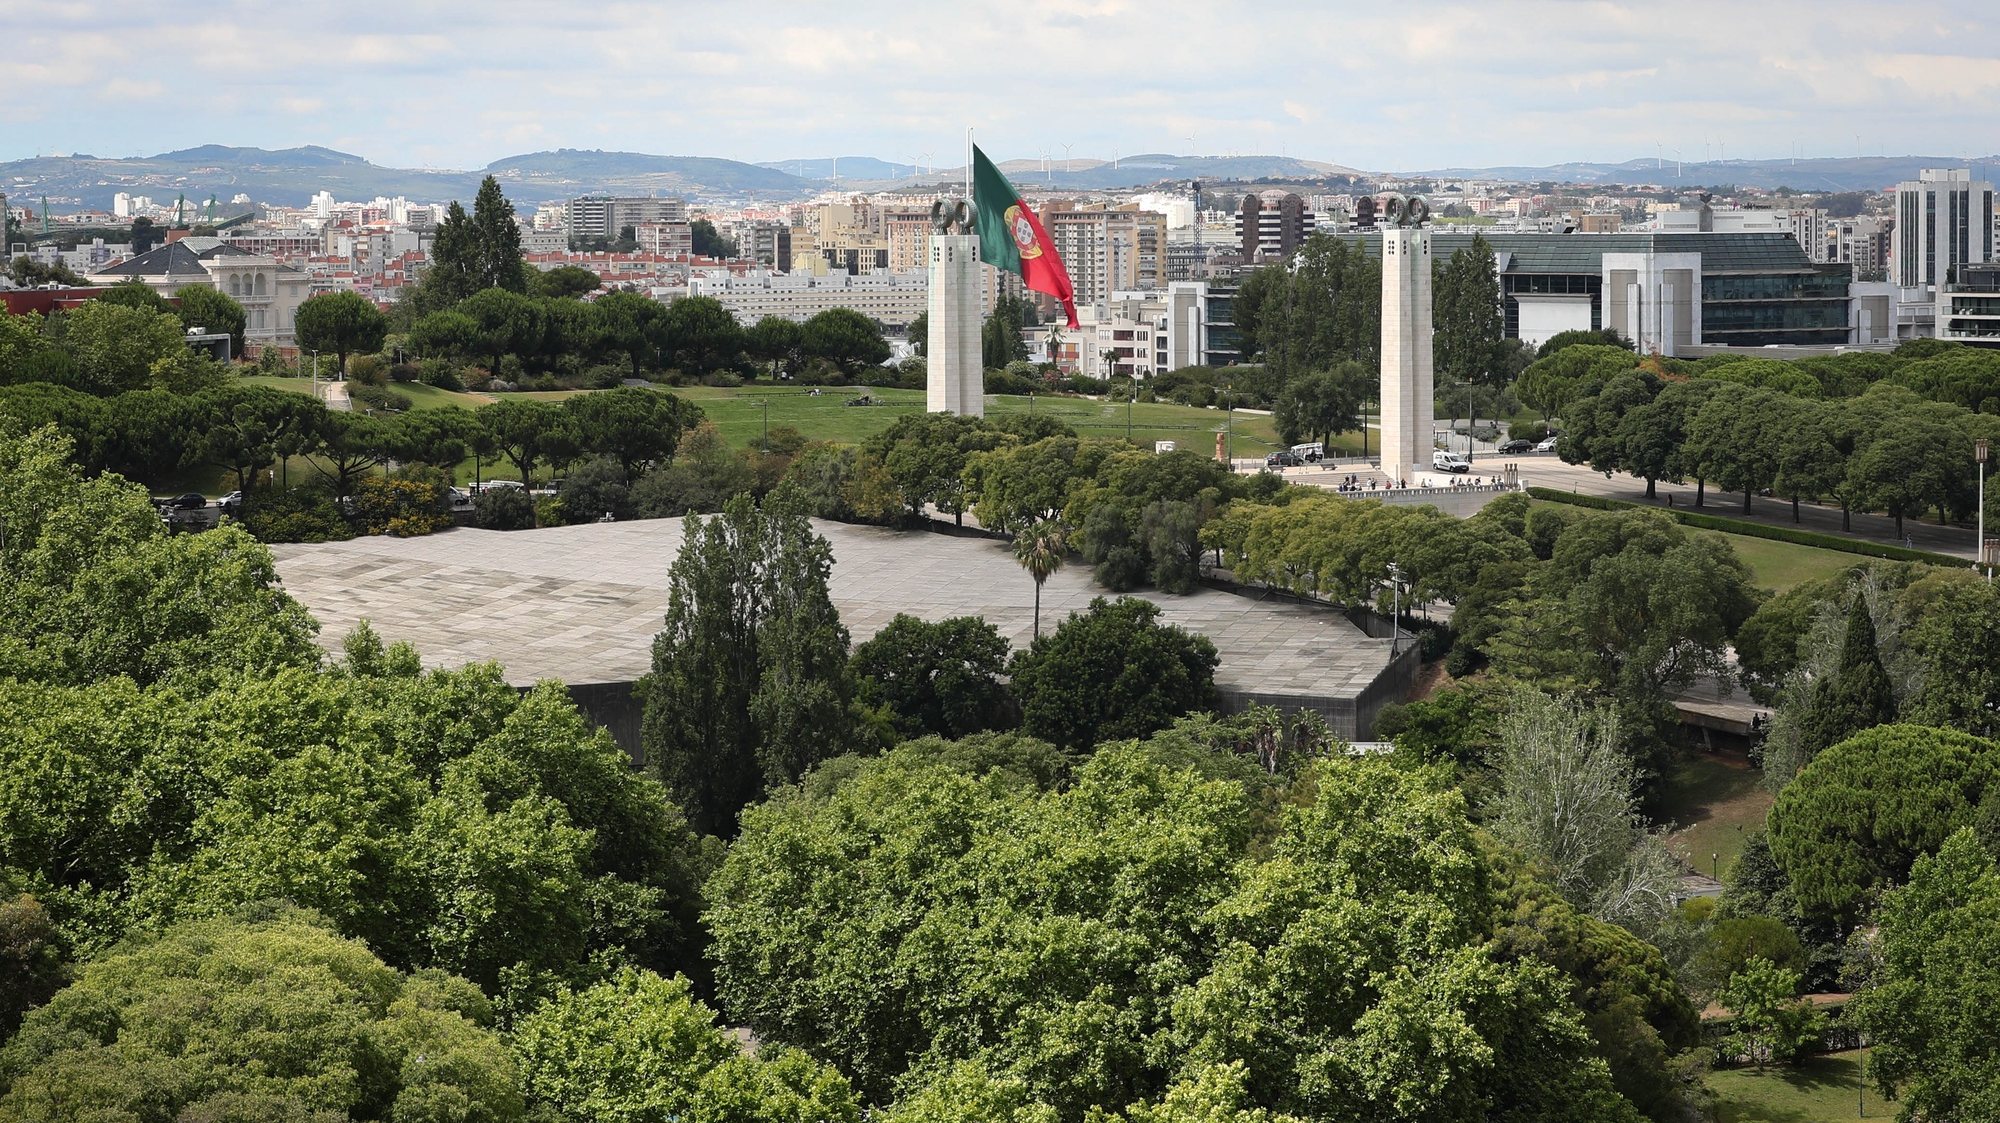 Vista do Parque Eduardo VII, Lisboa, 27 de junho de 2019. ANTÓNIO COTRIM/LUSA